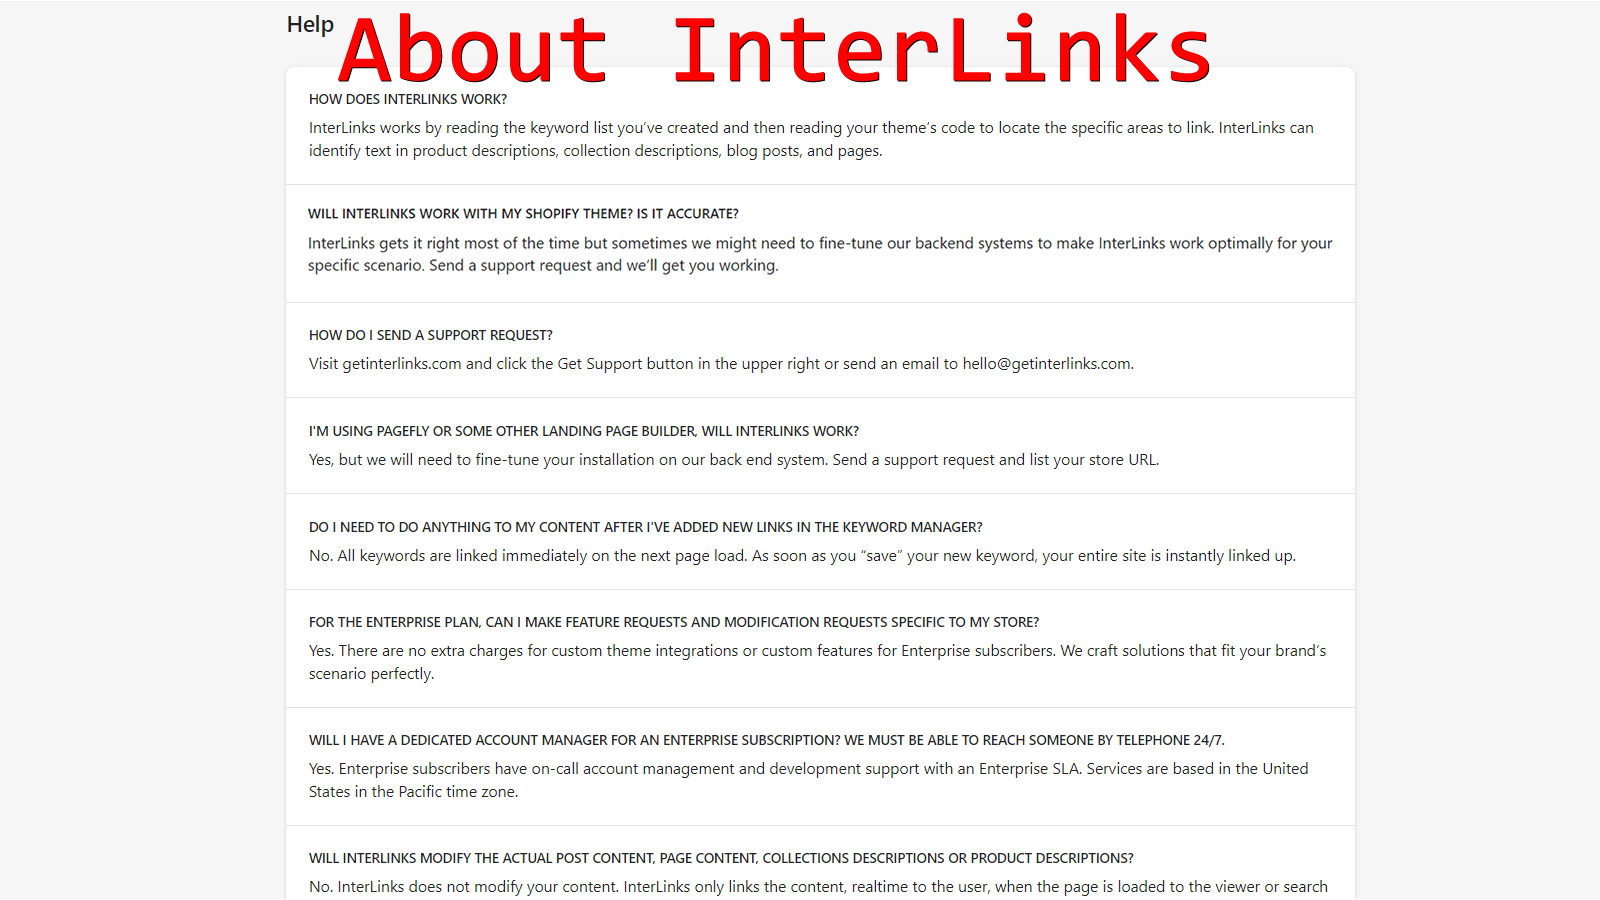 Interlinks - Settings Page - Illustrative Image